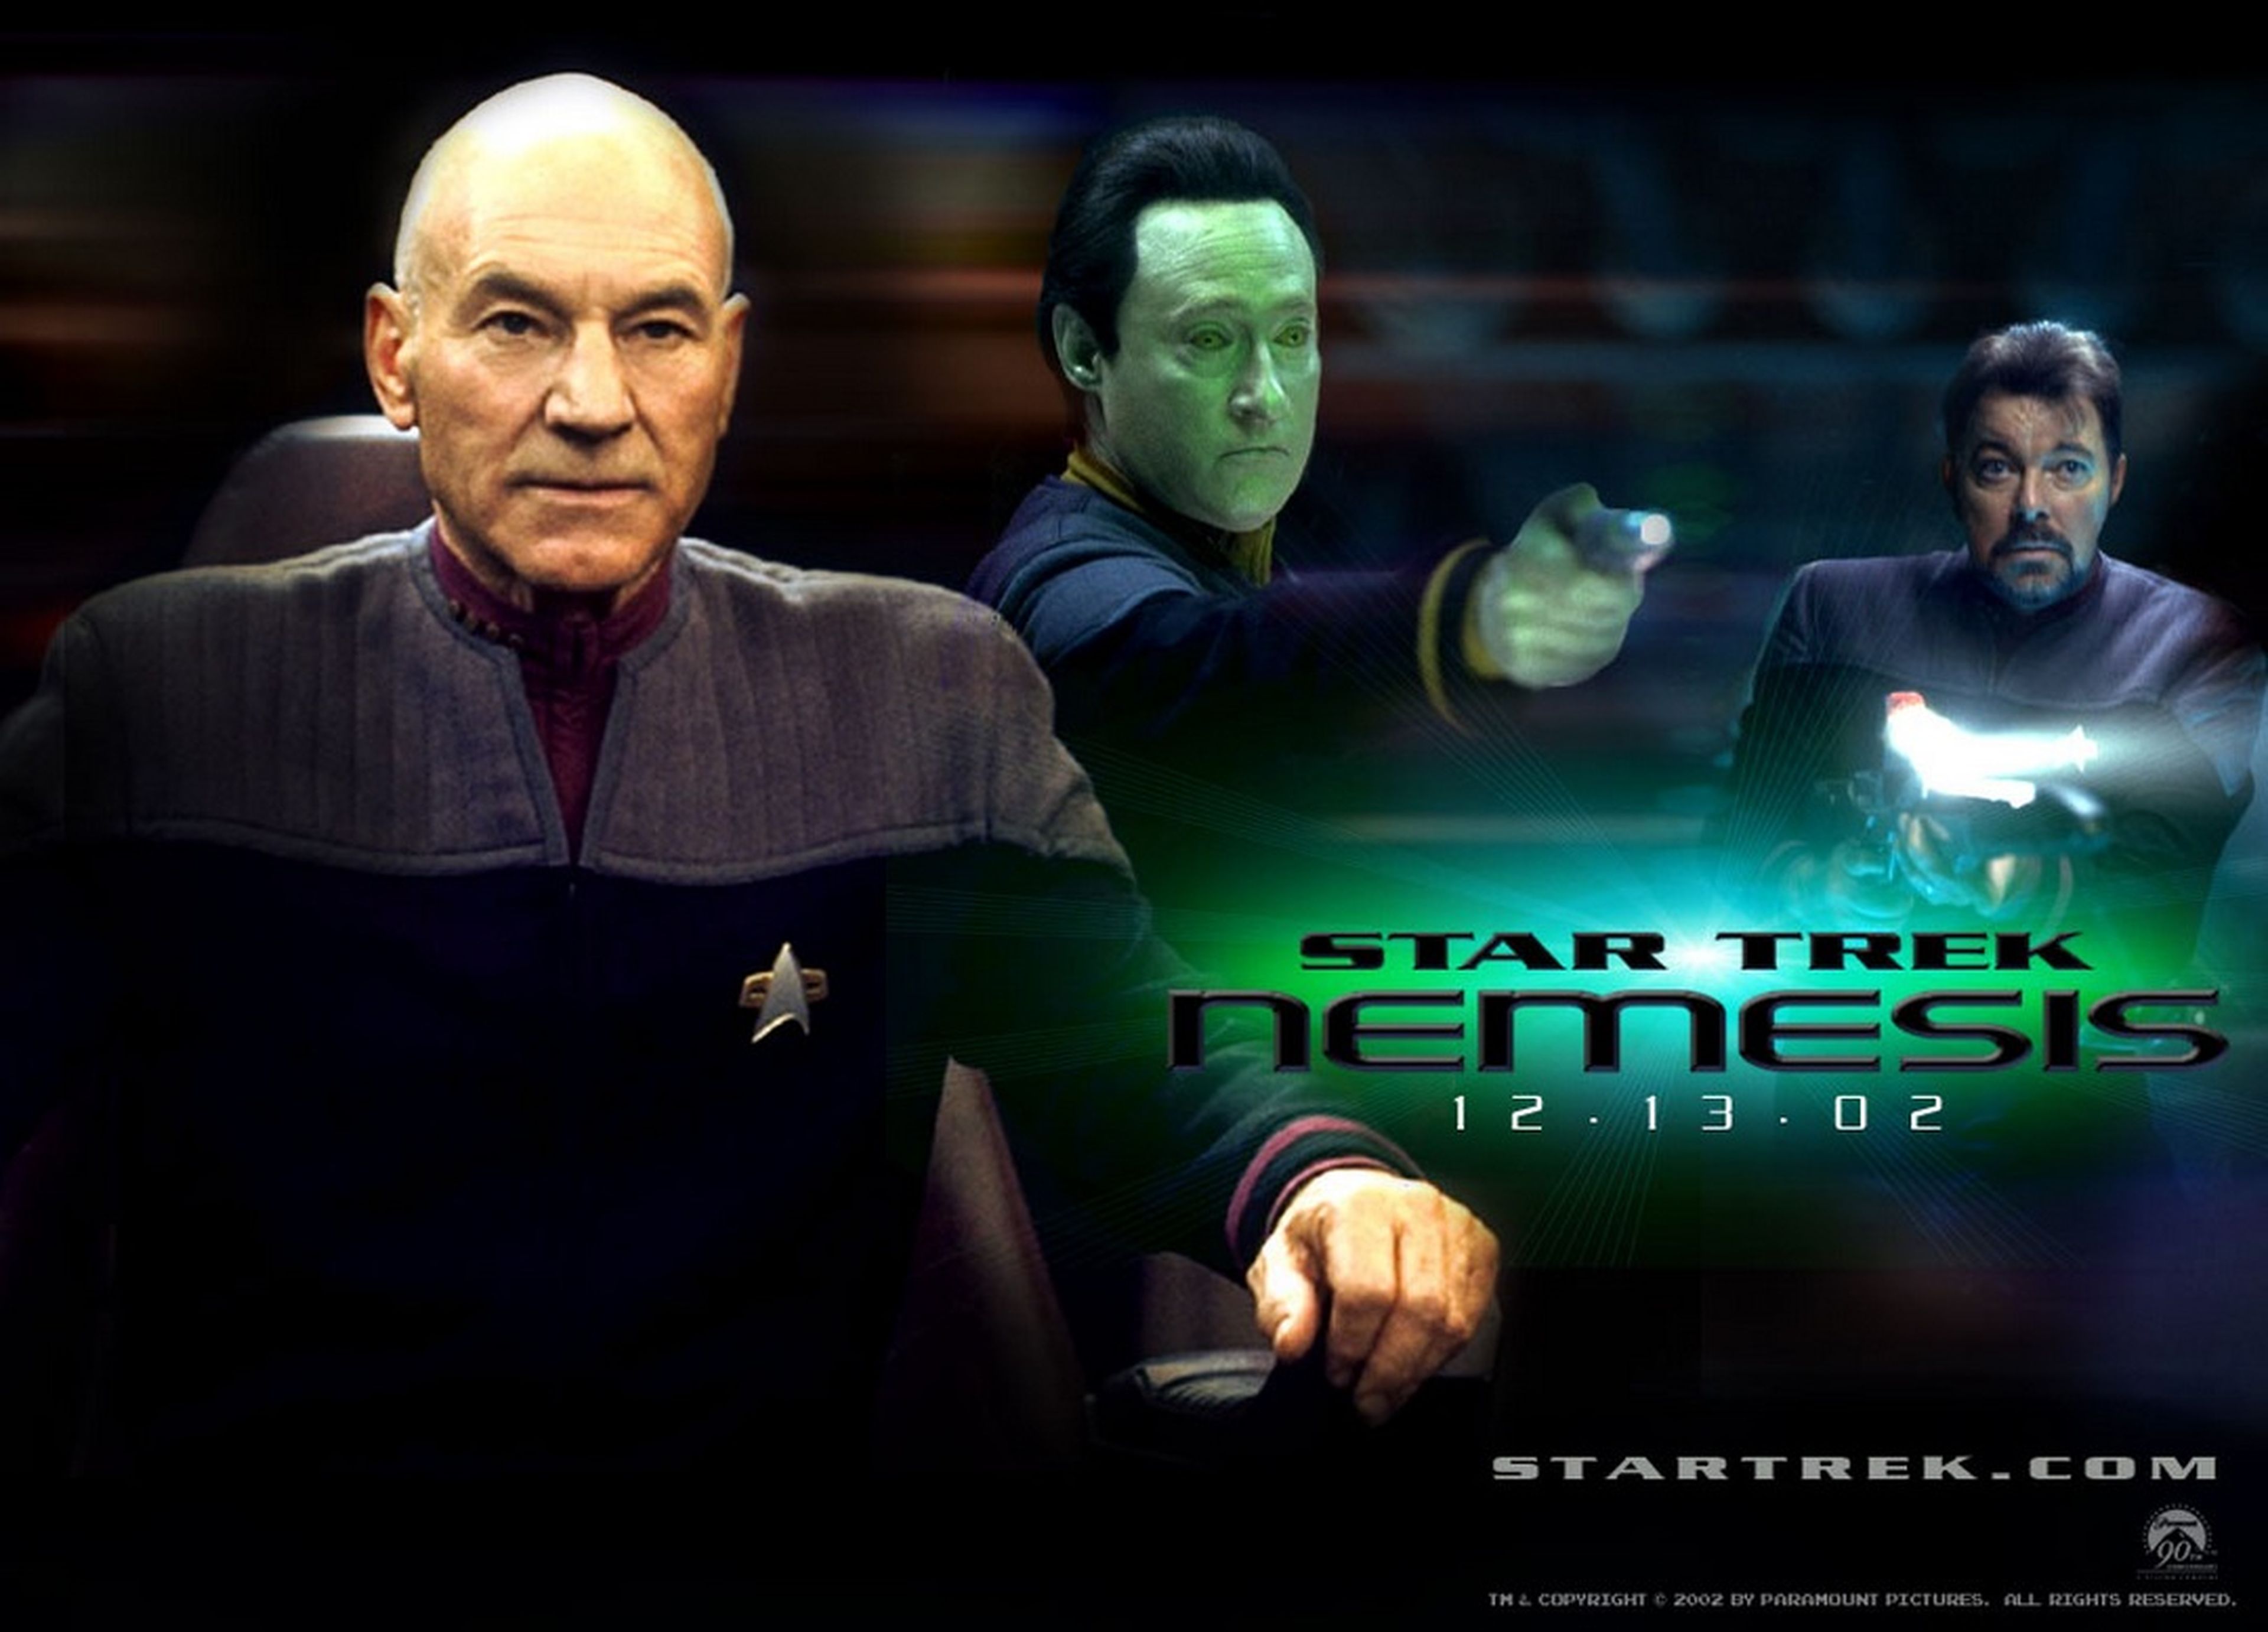 Patrick Stewart volverá a ser Jean-Luc Picard en una nueva serie de Star Trek